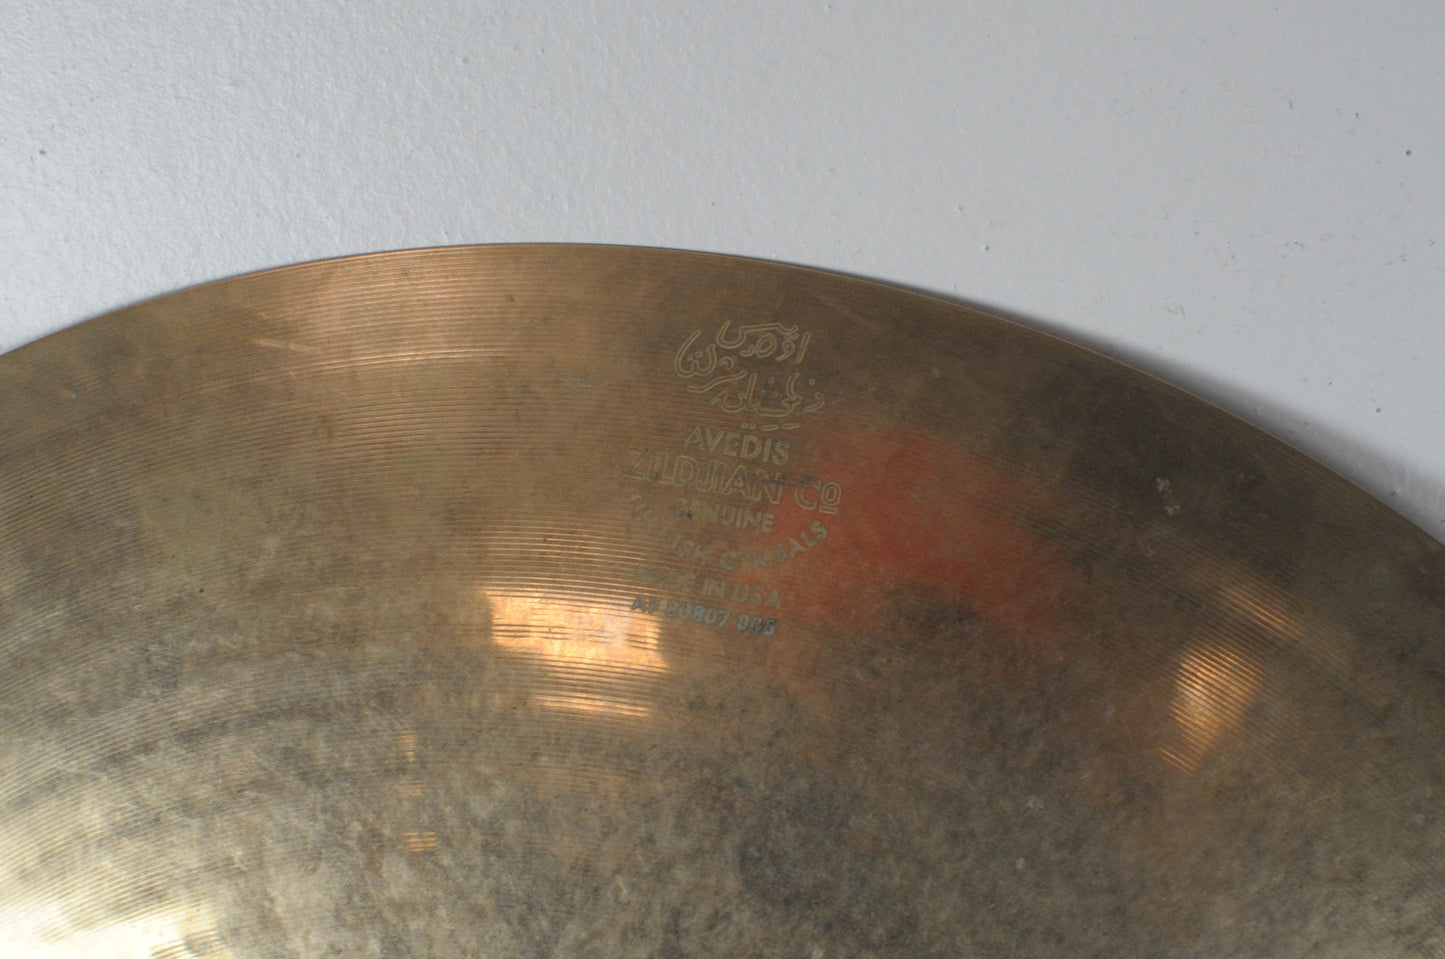 2016 Zildjian A Custom 20" Ping Ride Cymbal 2339g